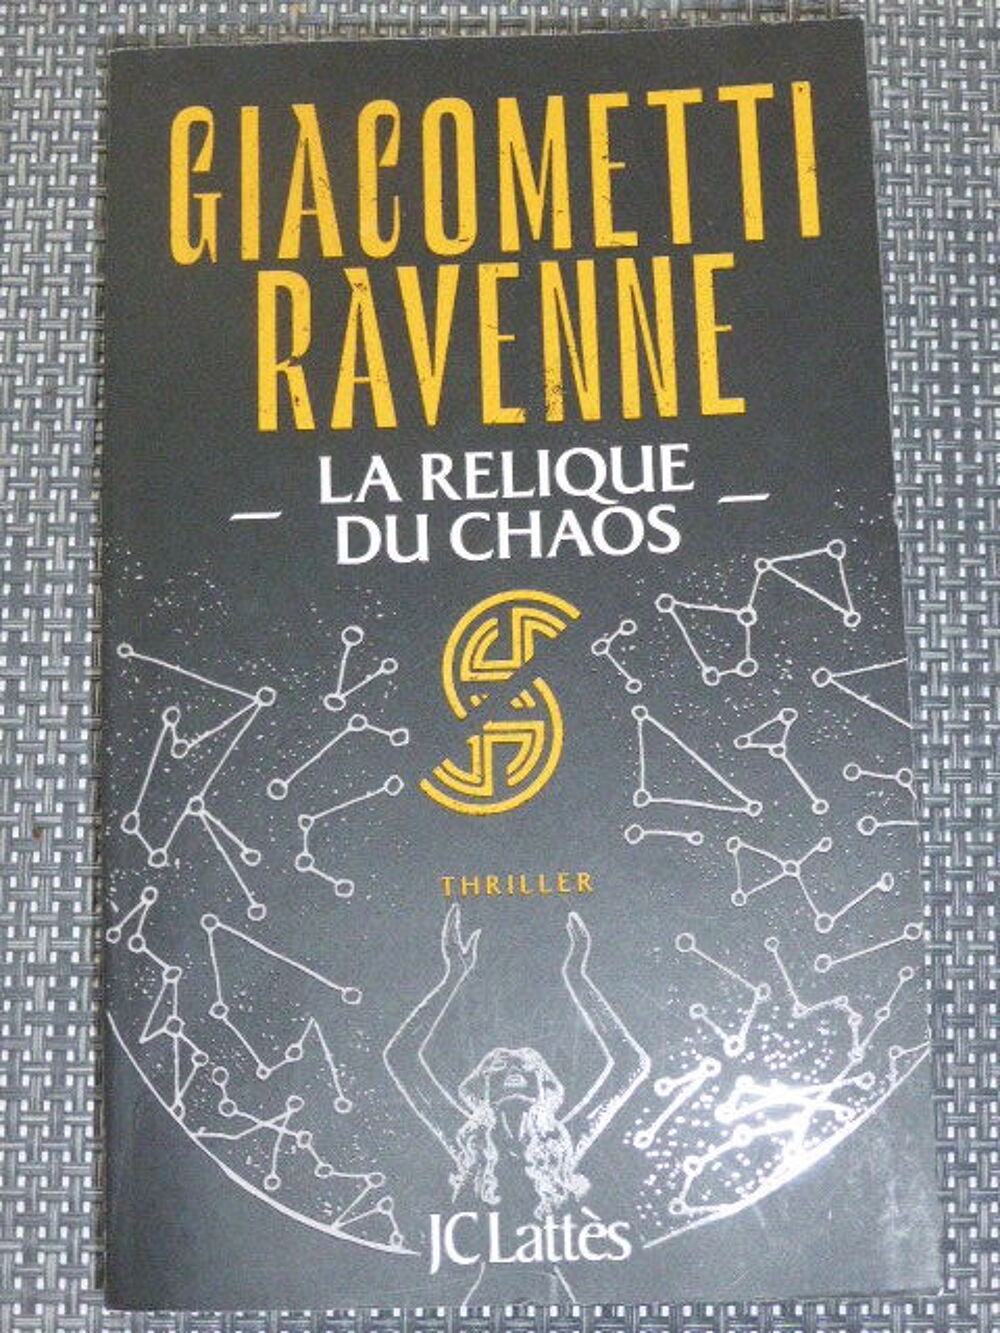 La relique du chaos Giacometti Ravenne Livres et BD